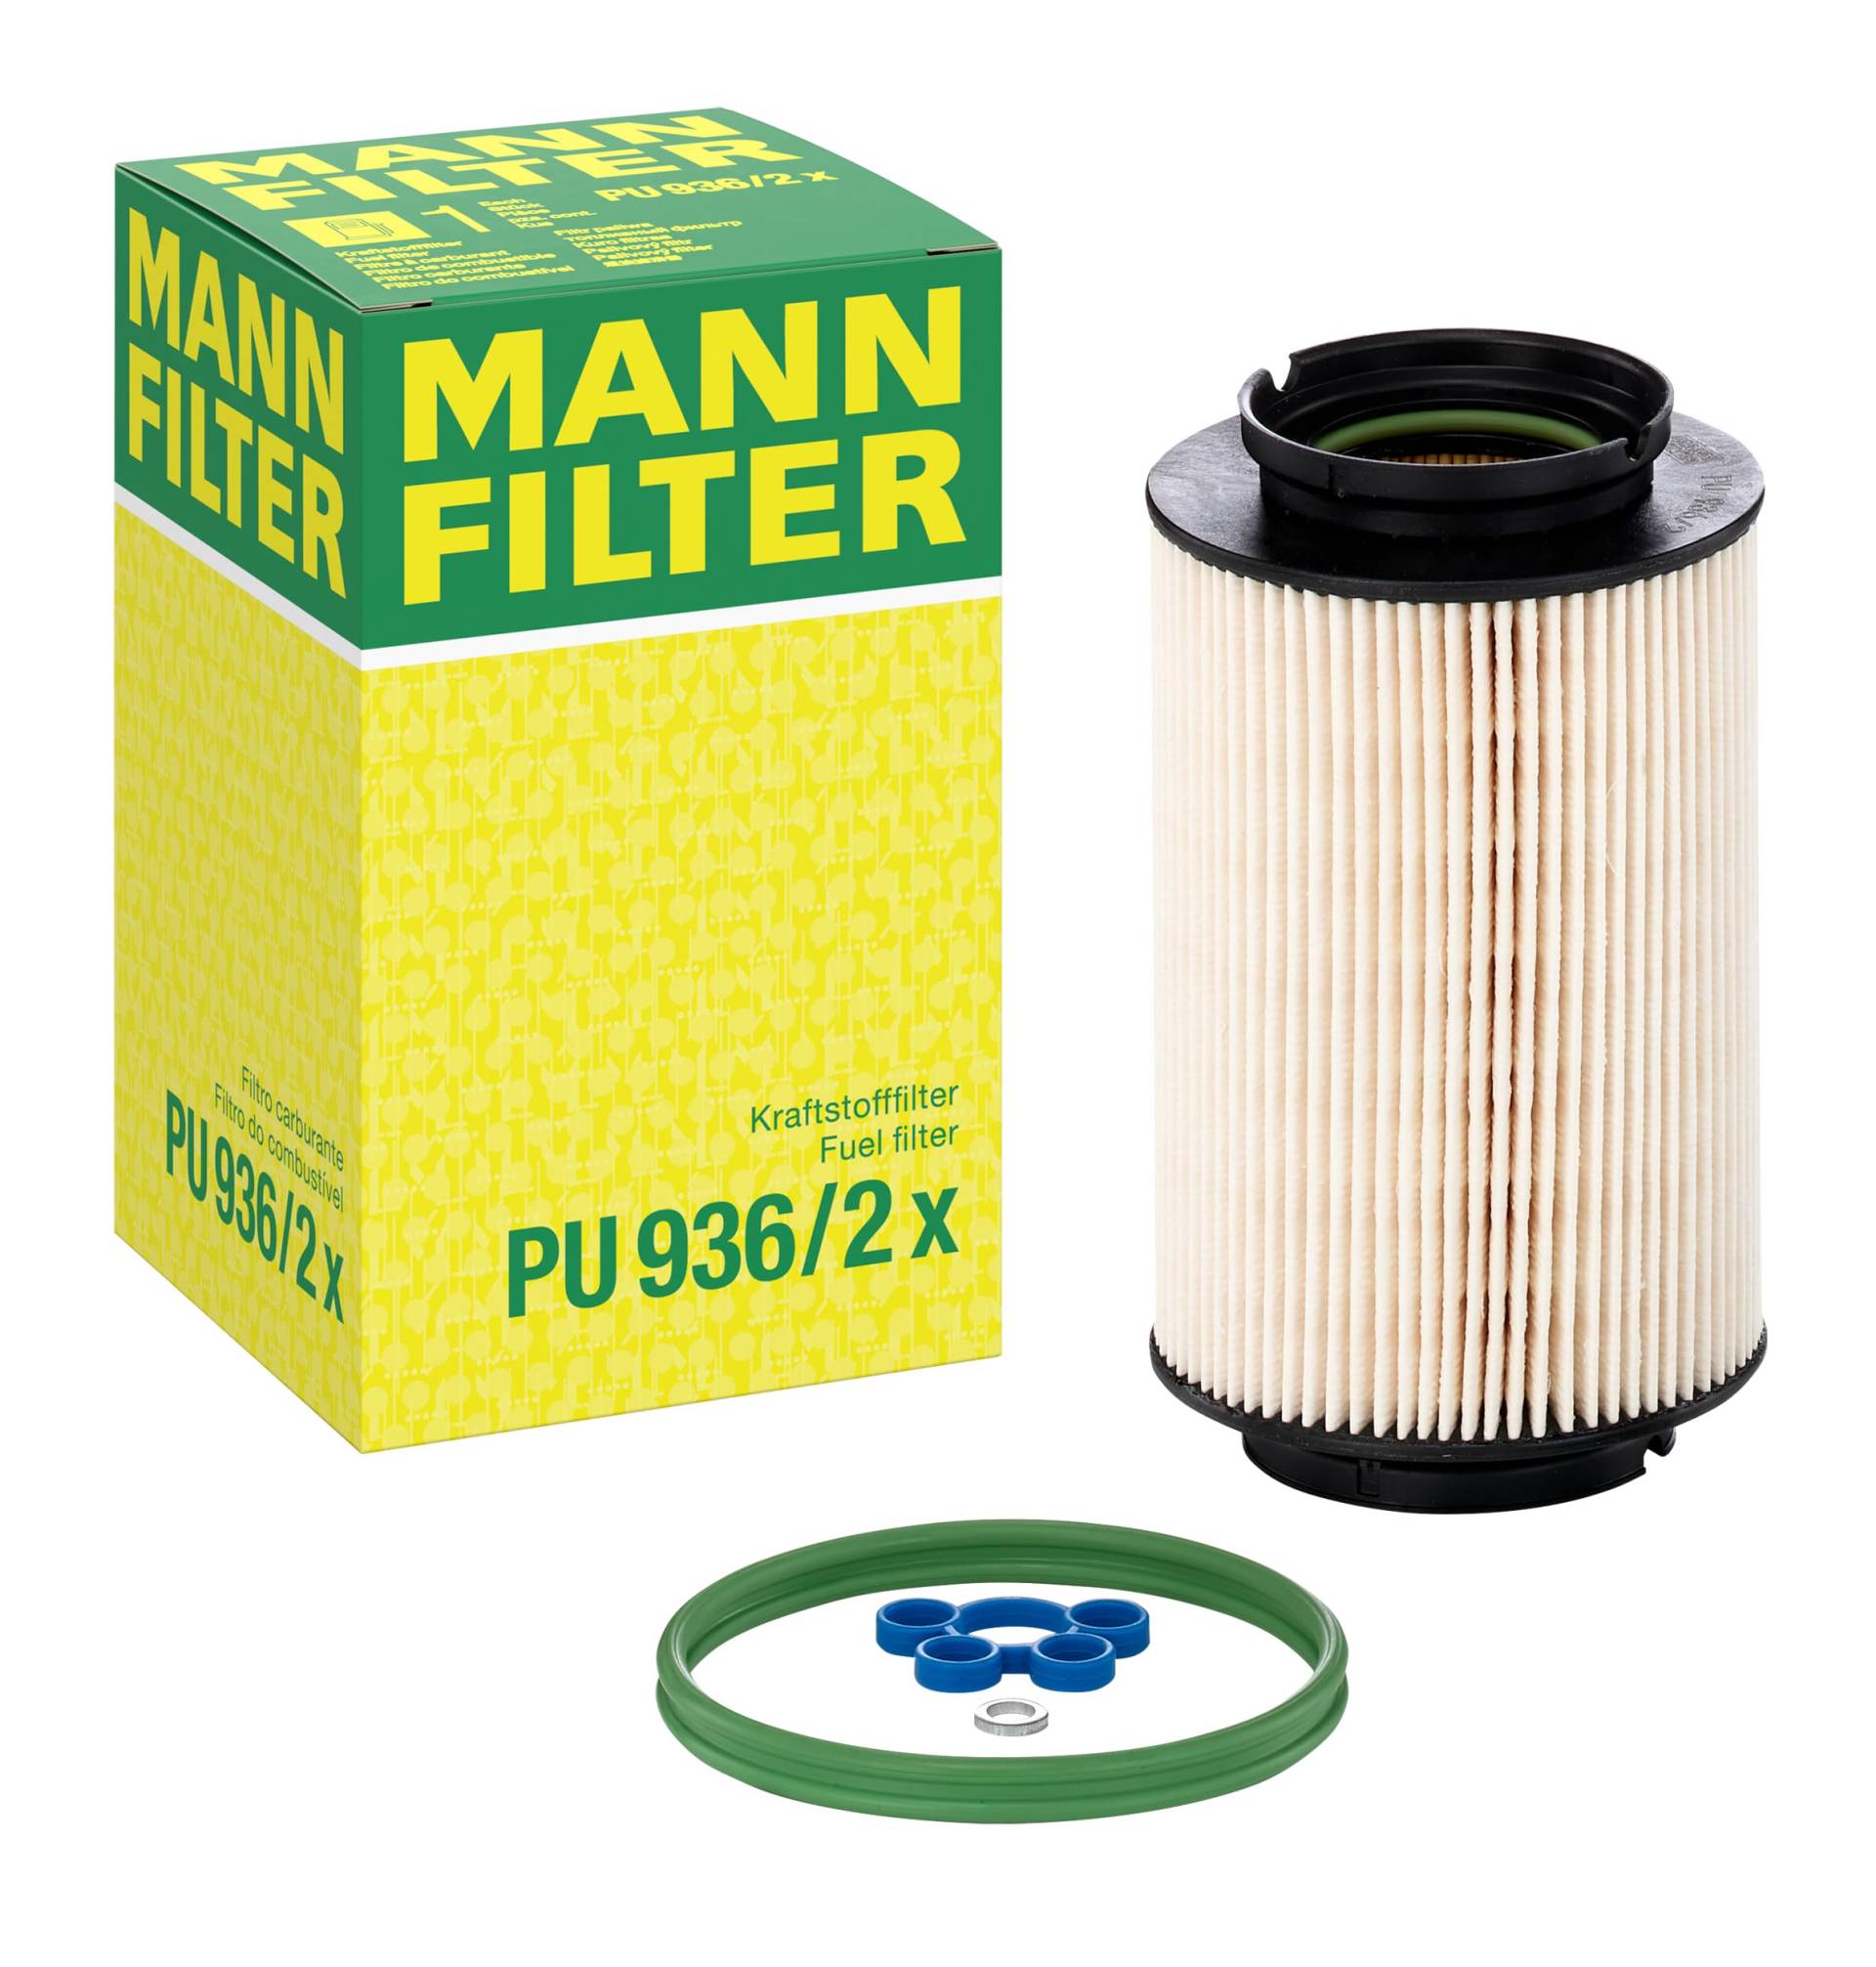 MANN-FILTER PU 936/2 X Kraftstofffilter – Kraftstofffilter Satz mit Dichtung / Dichtungssatz – Für PKW von MANN-FILTER